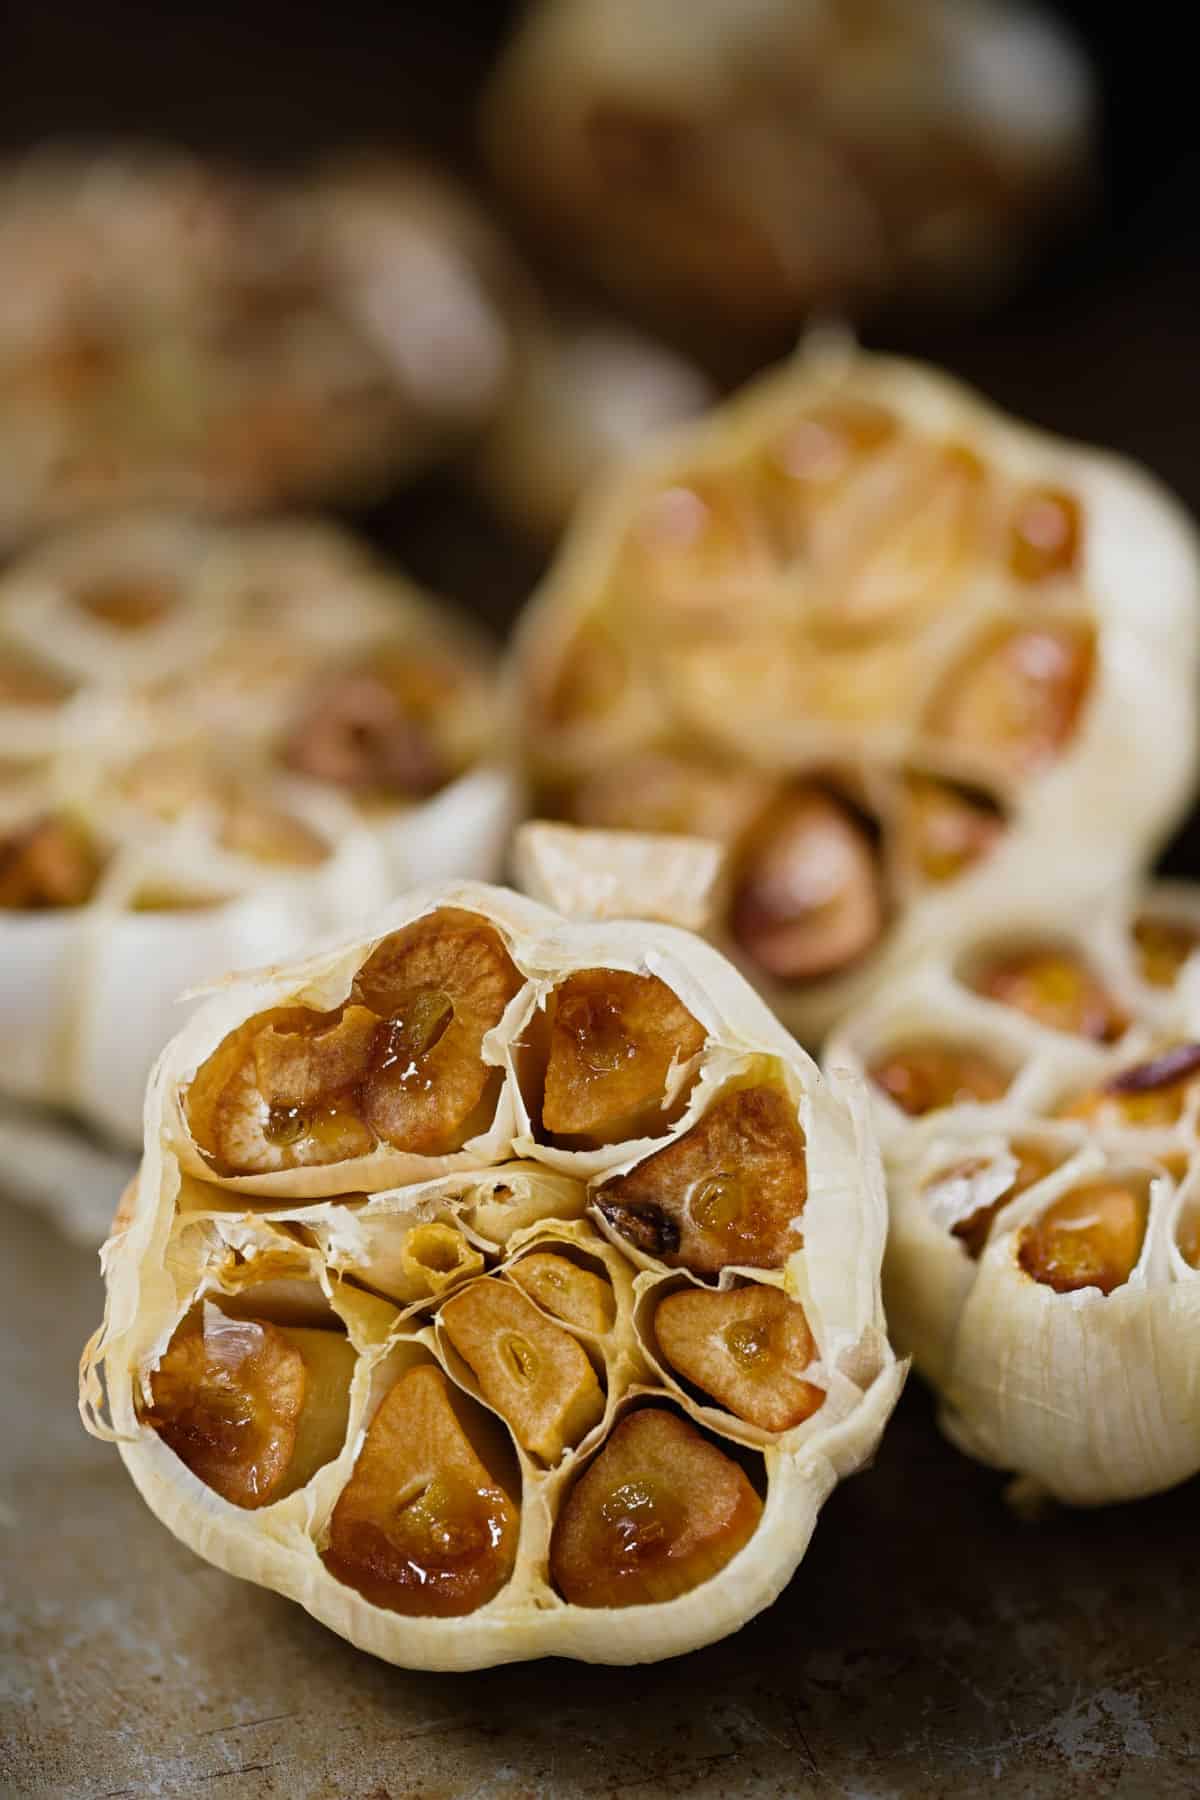 Bulbs of roasted garlic.